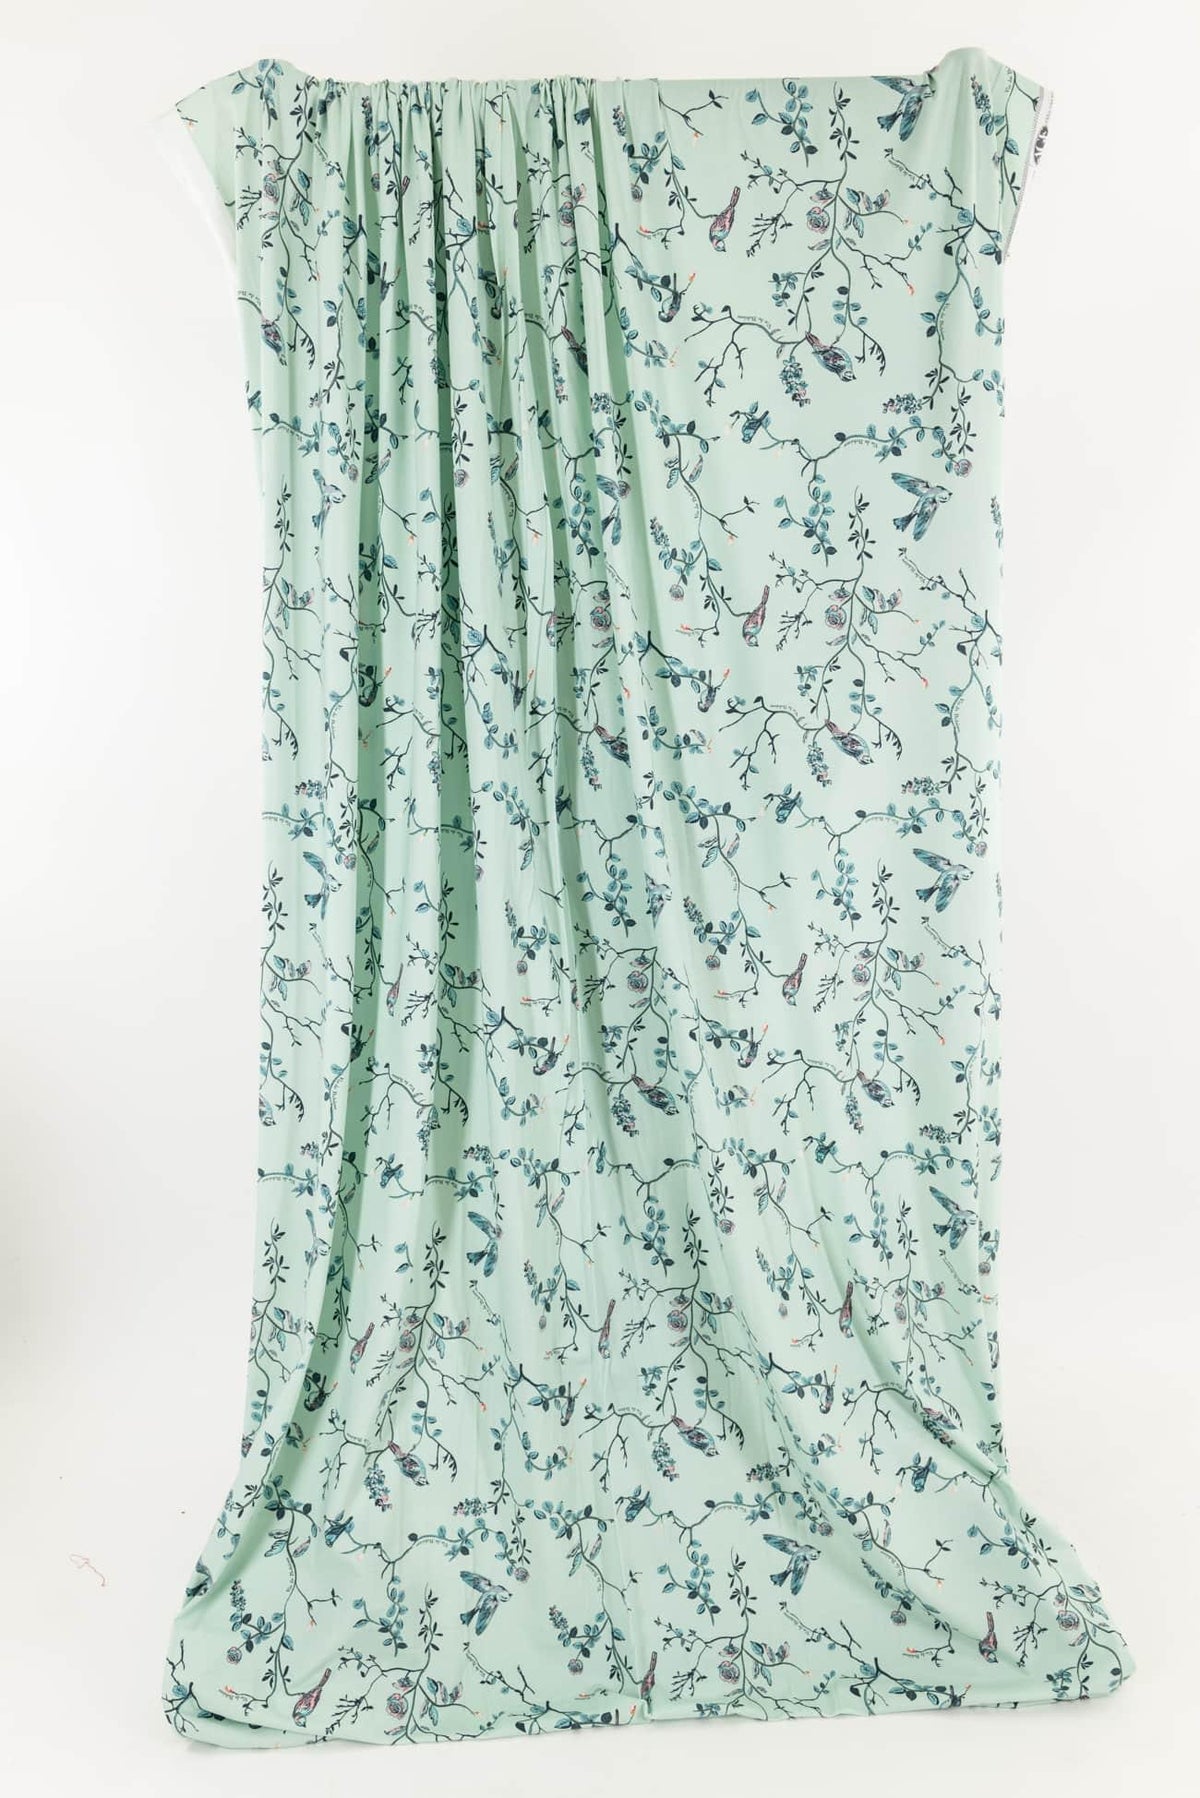 Tea Garden Cotton Knit - Marcy Tilton Fabrics